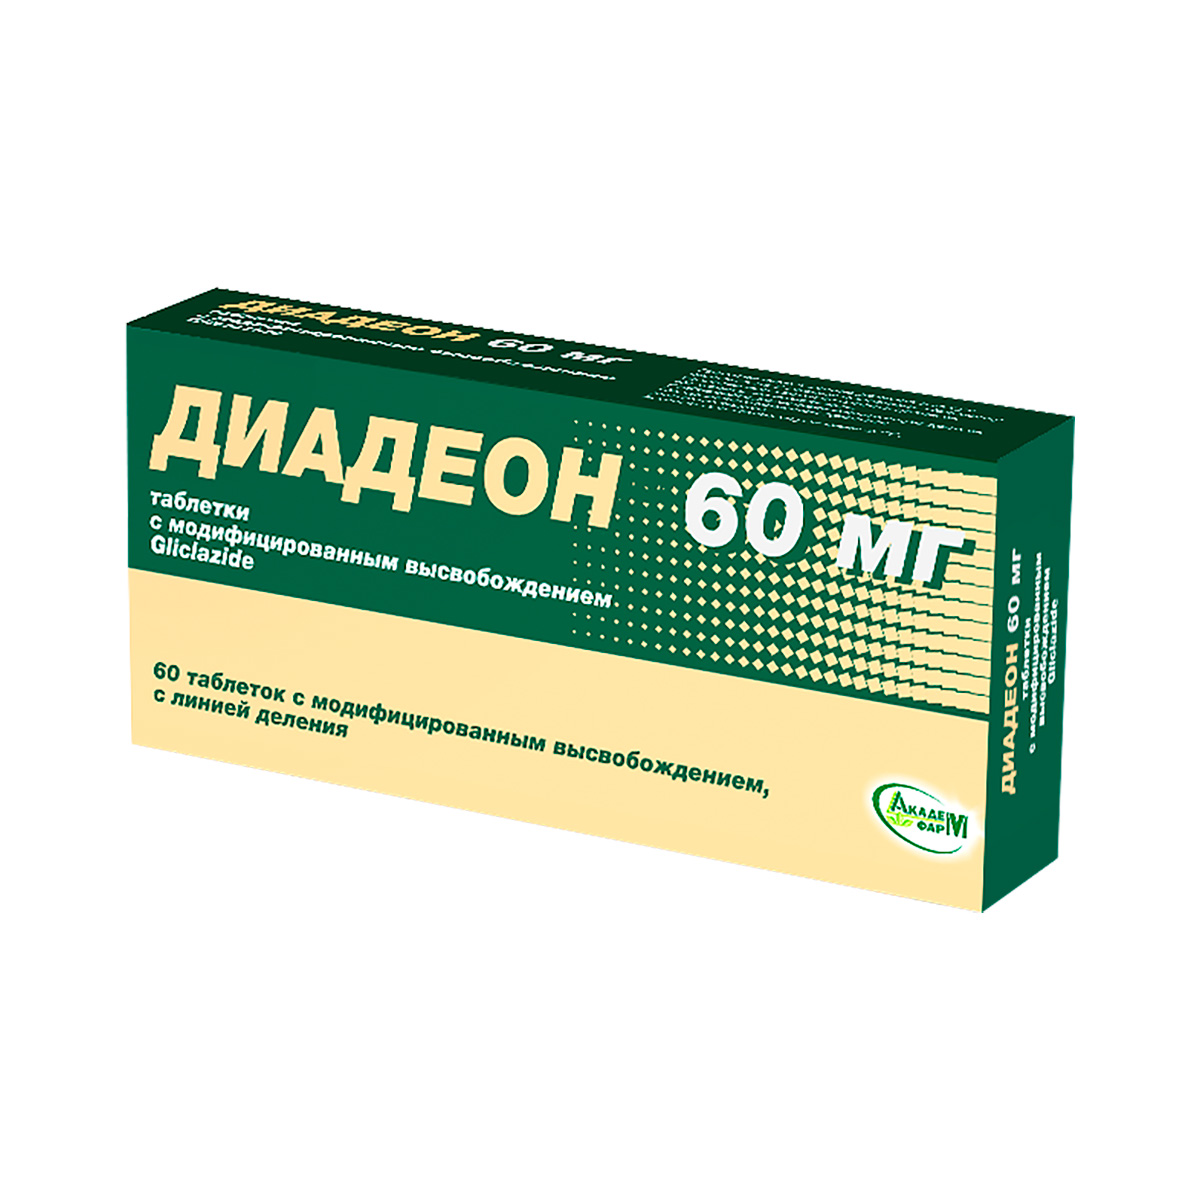 Диадеон 60 мг таблетки с модифицированным высвобождением 60 шт